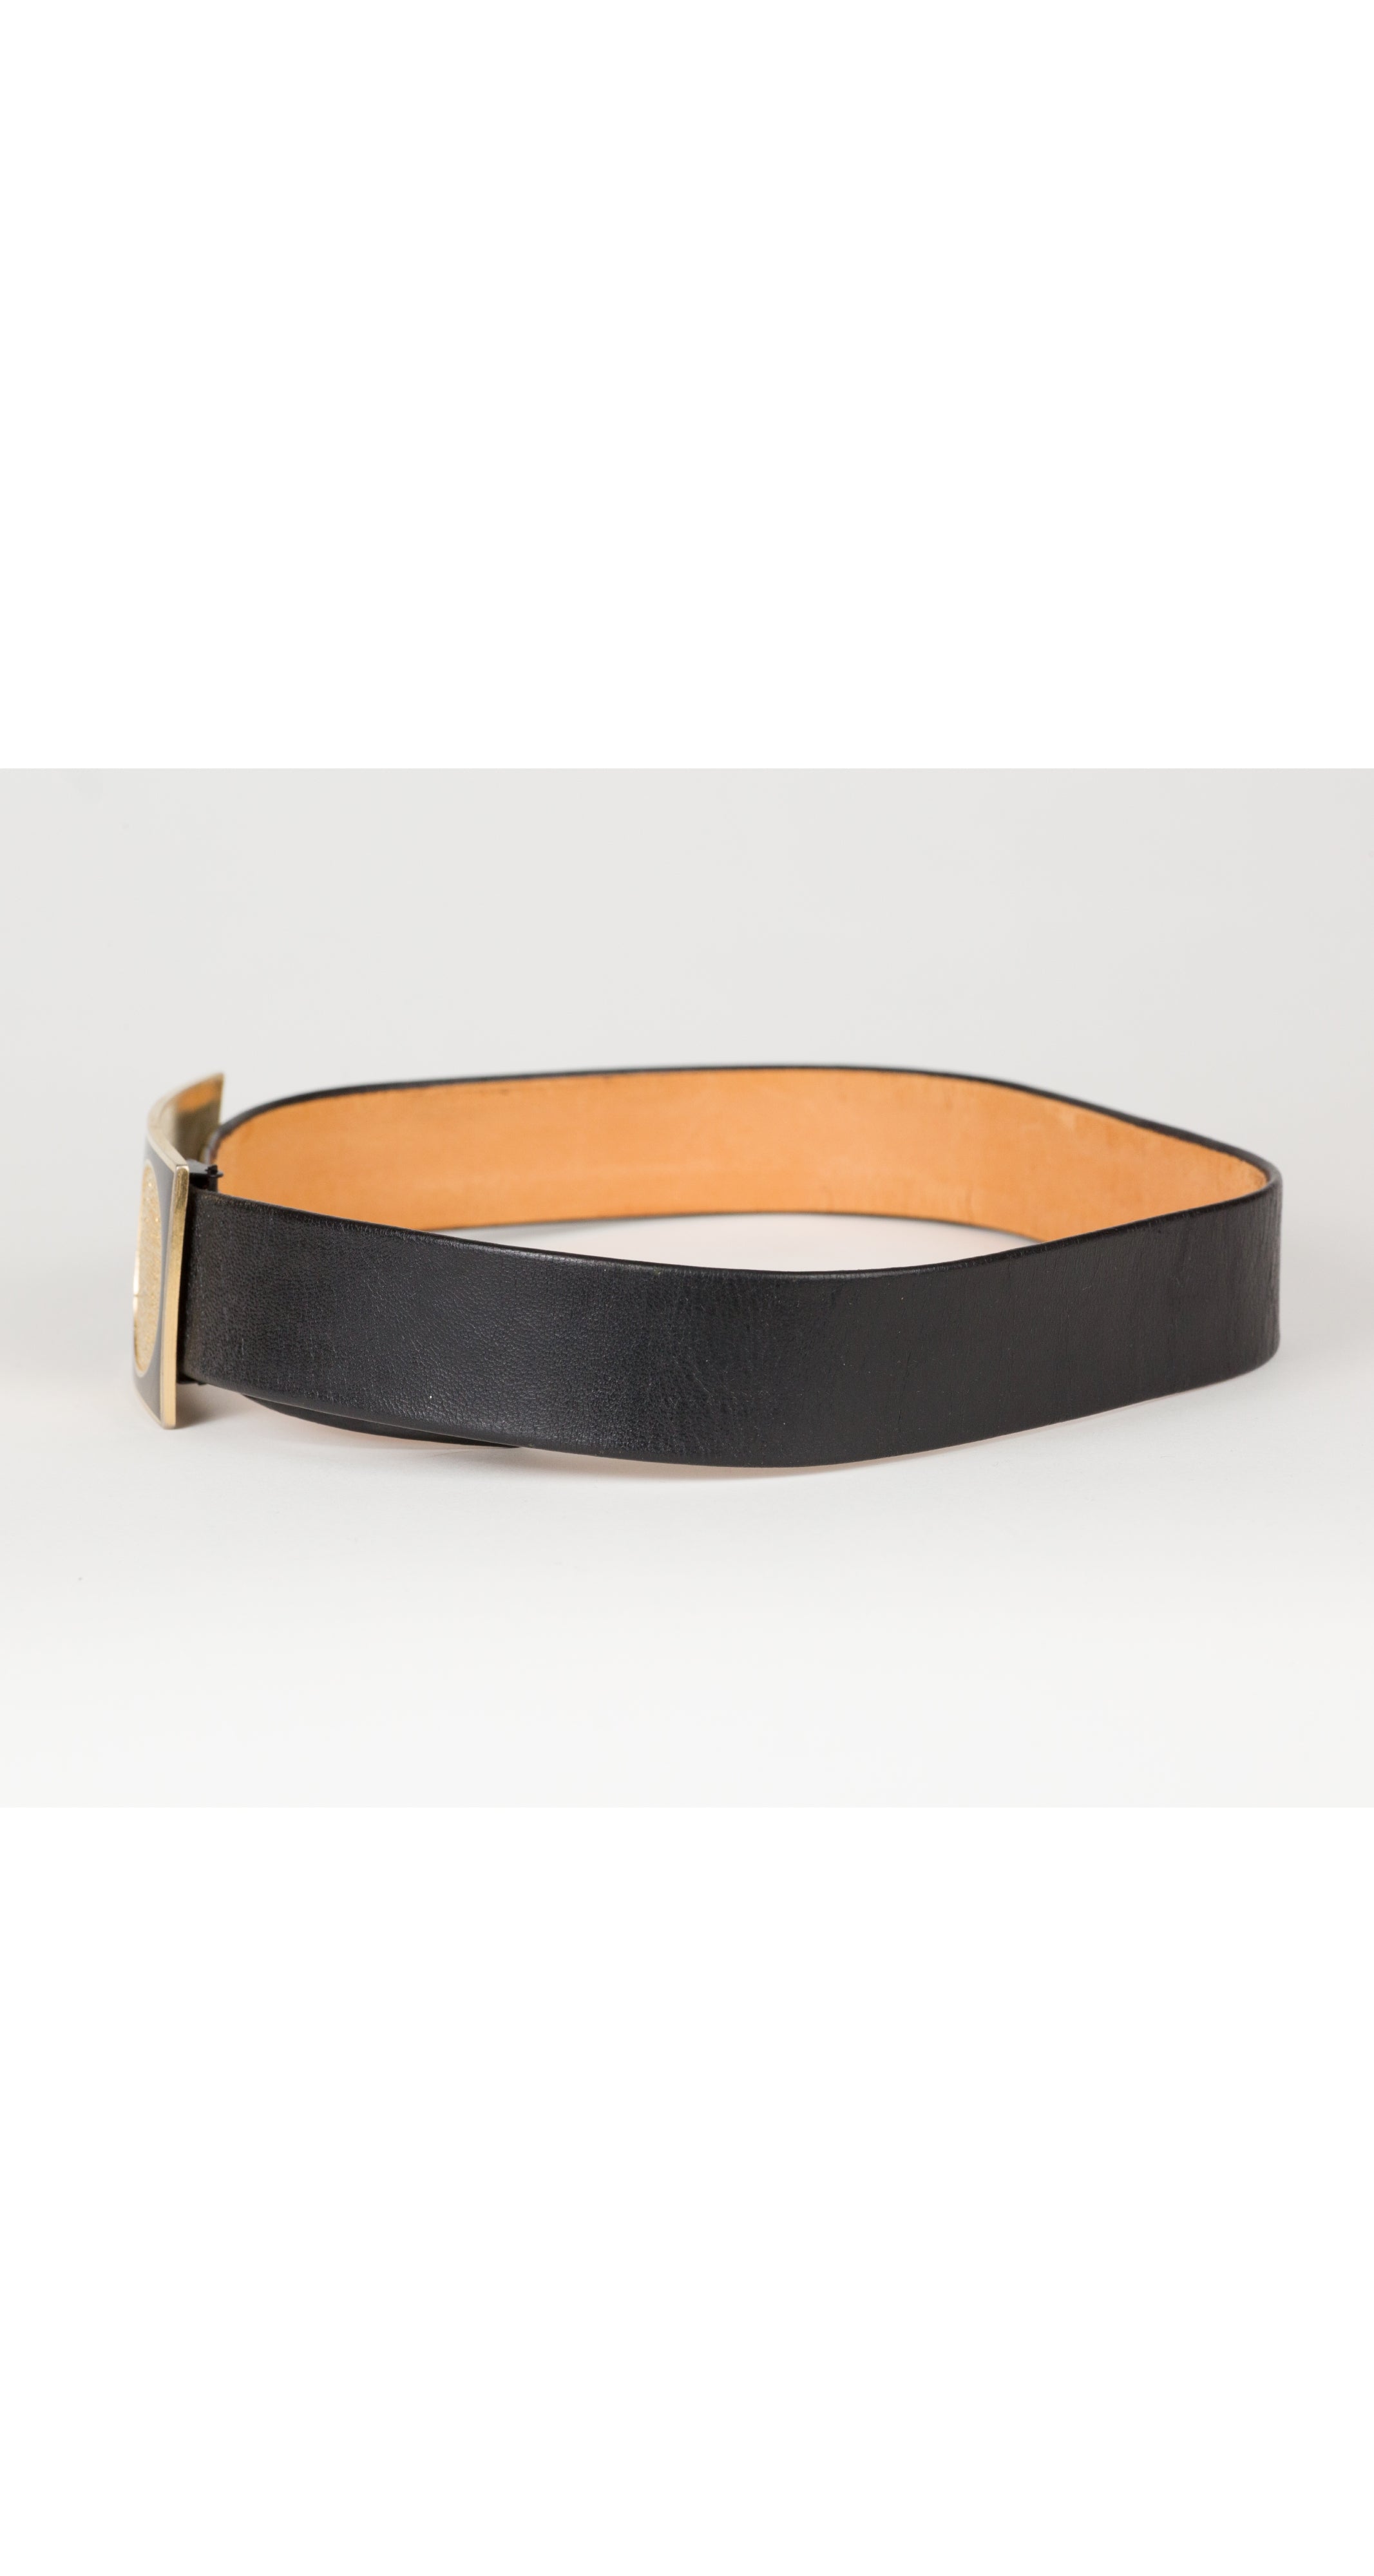 1970s Modernist Gold Buckle Black Leather Belt